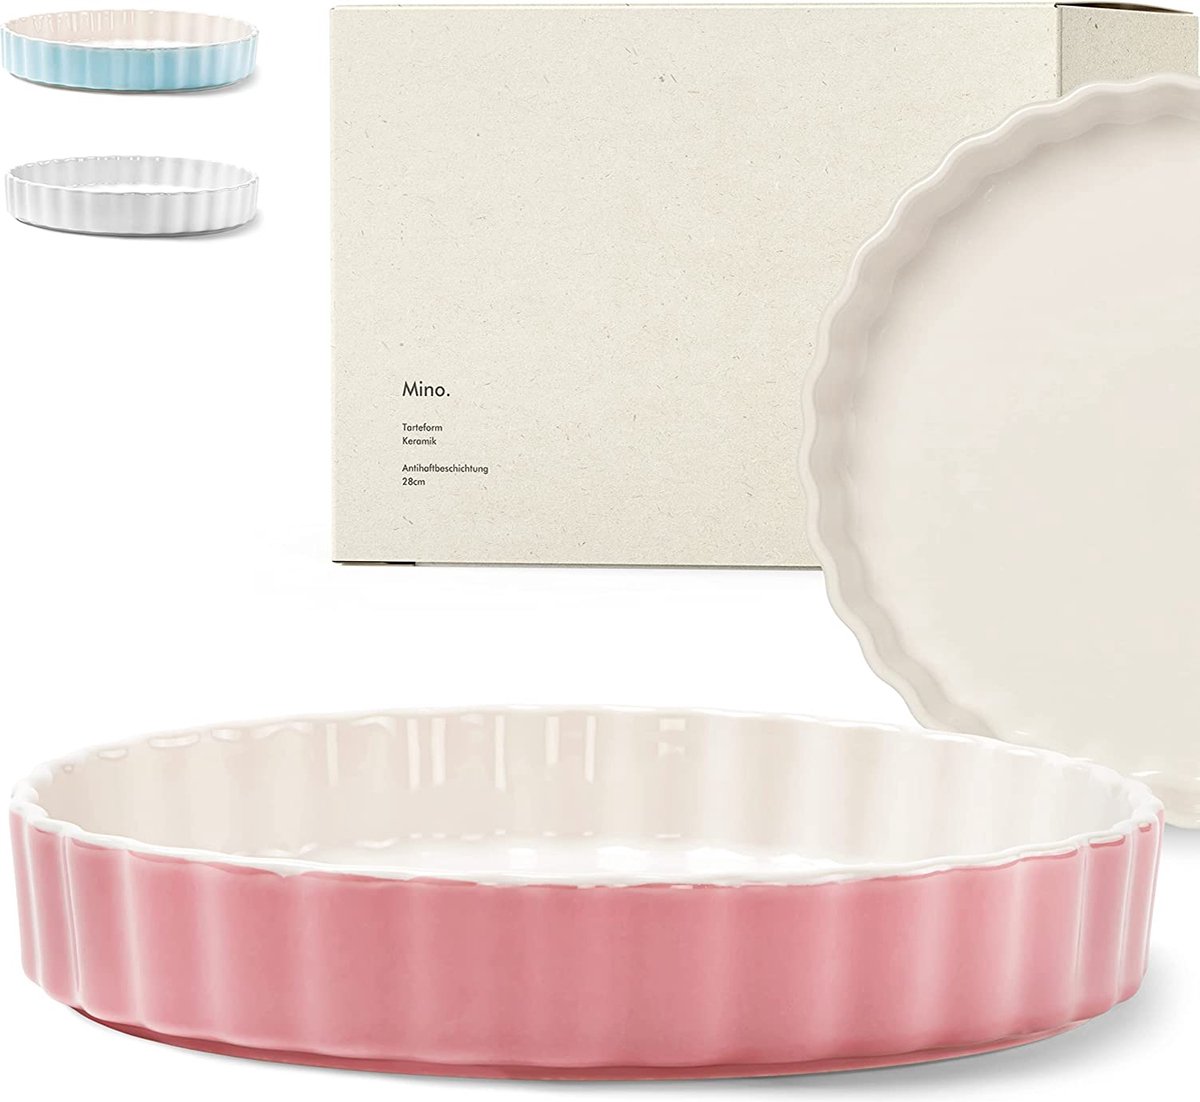 Taartvorm [28 cm] - quichevorm van keramiek met antiaanbaklaag - fruitcakevorm - taartvorm van keramiek roze - taartvorm - quichebakvorm - bakvorm van keramiek rond - taartvorm - braadpan - ronde braadpan